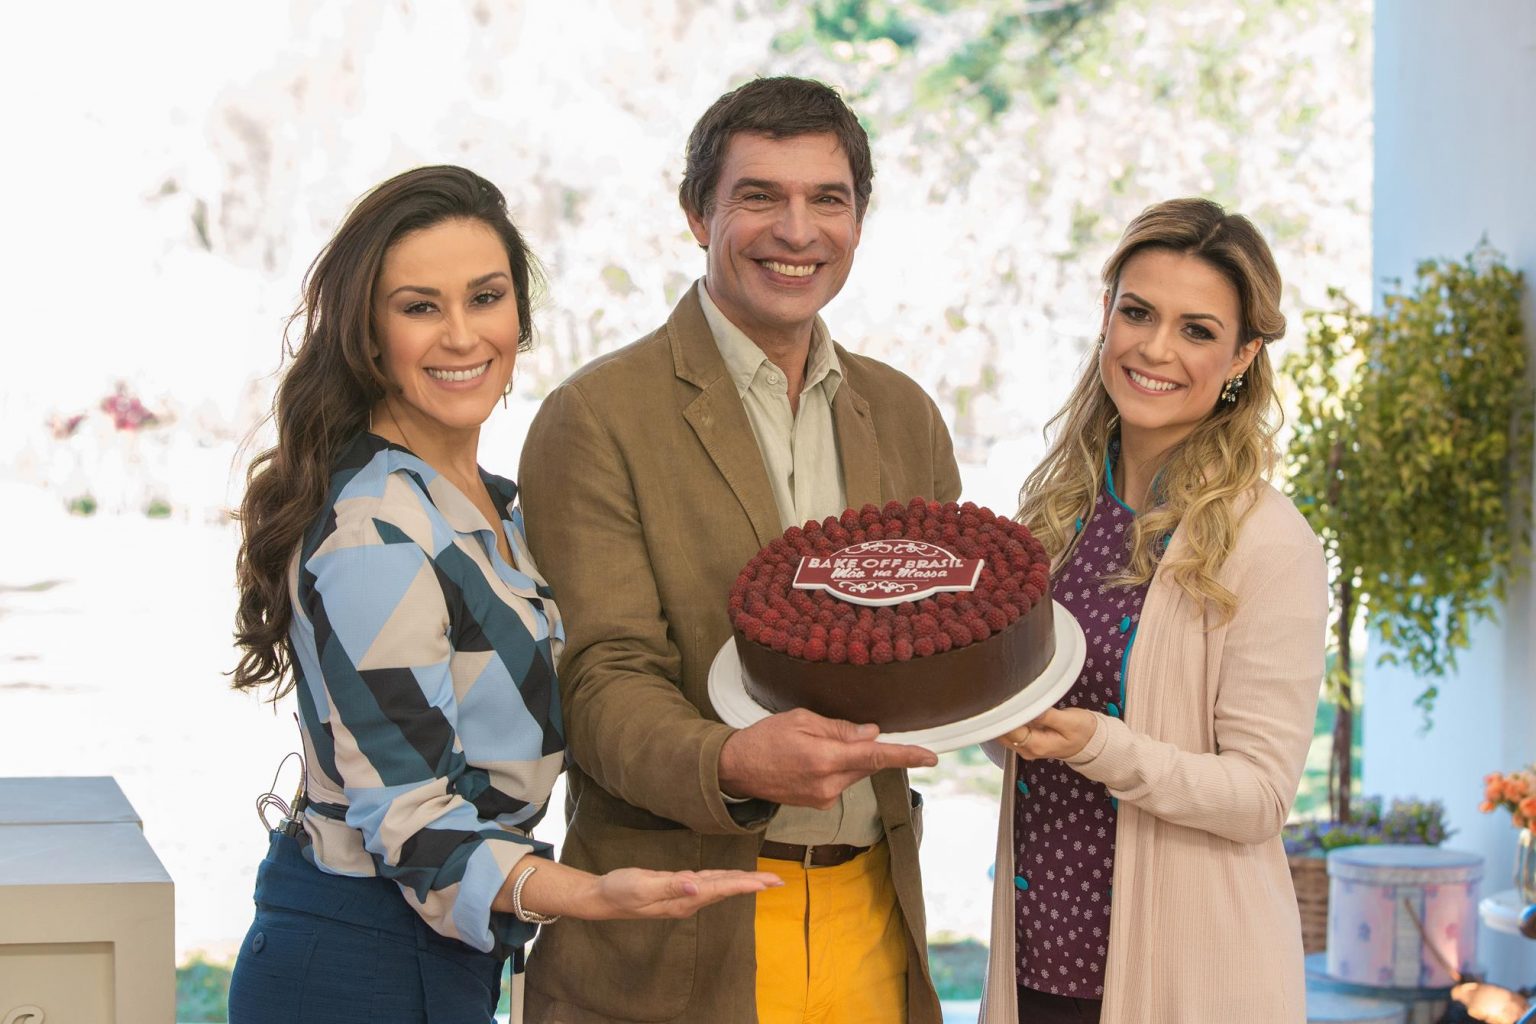 Especial Bake Off Brasil Celebridades confira os participantes